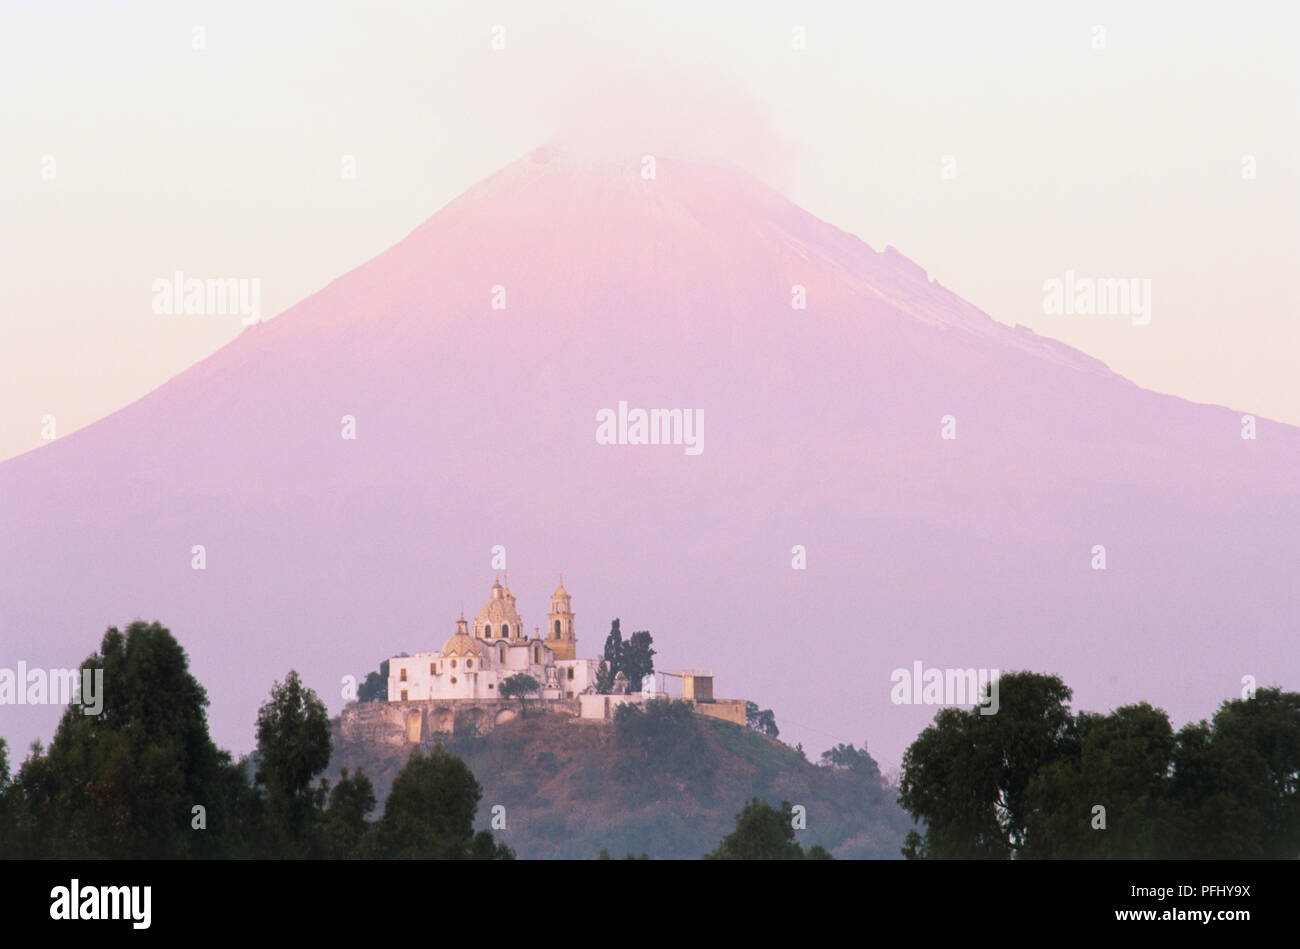 Messico, Popocatepetl, Nuestra Senora de los Remedios, chiesa sulla sommità della Grande Piramide di Cholula con misty vulcano sullo sfondo. Foto Stock